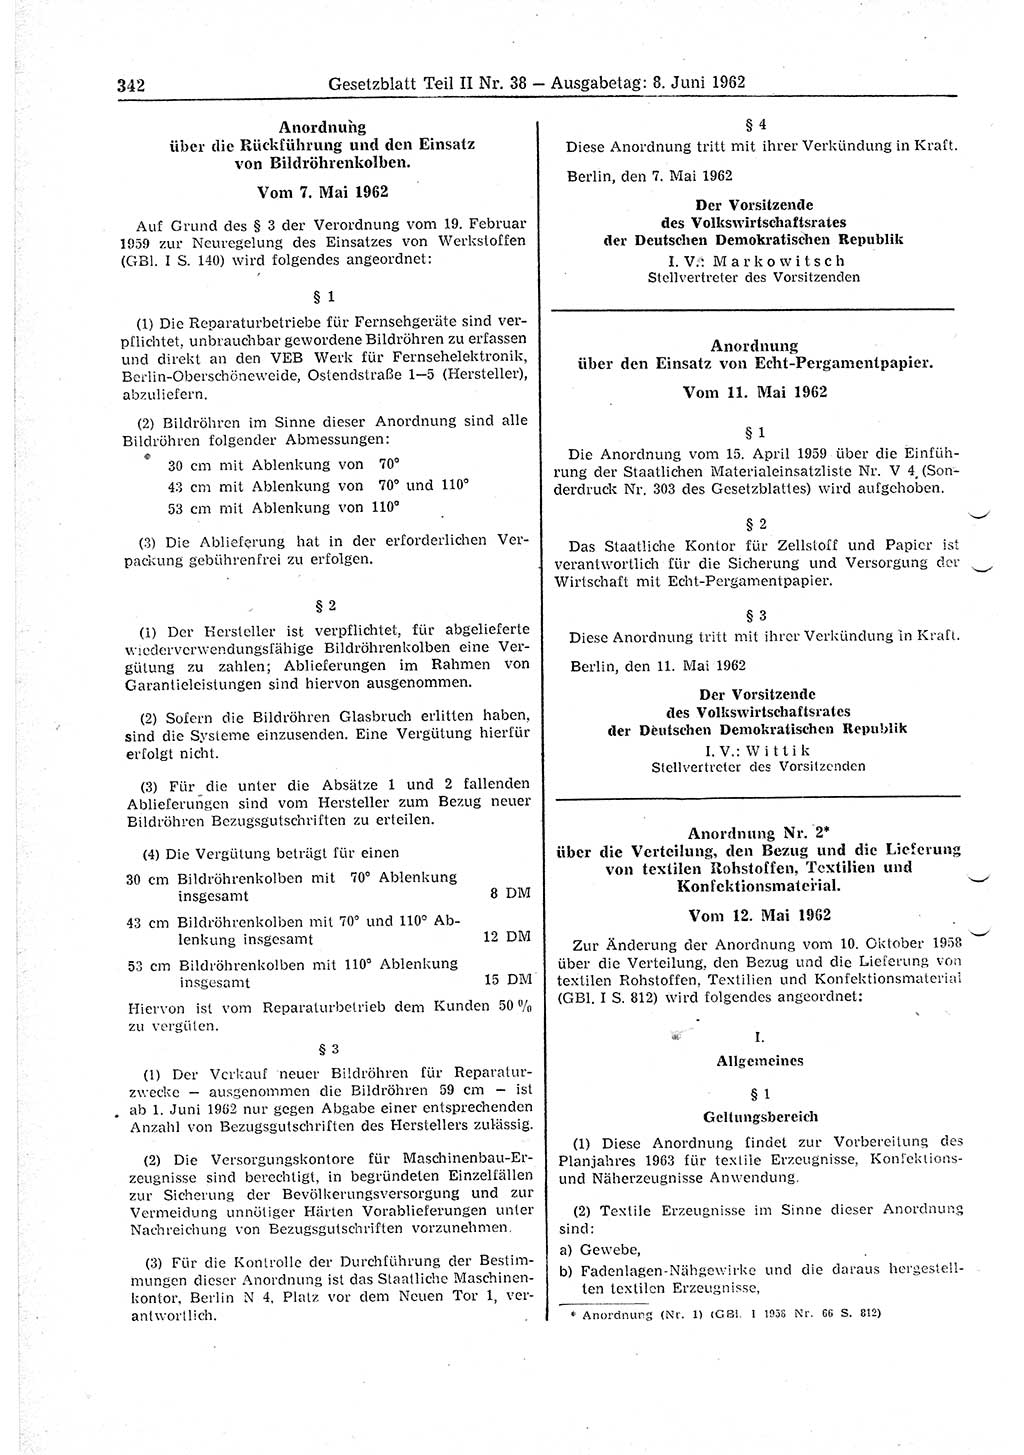 Gesetzblatt (GBl.) der Deutschen Demokratischen Republik (DDR) Teil ⅠⅠ 1962, Seite 342 (GBl. DDR ⅠⅠ 1962, S. 342)